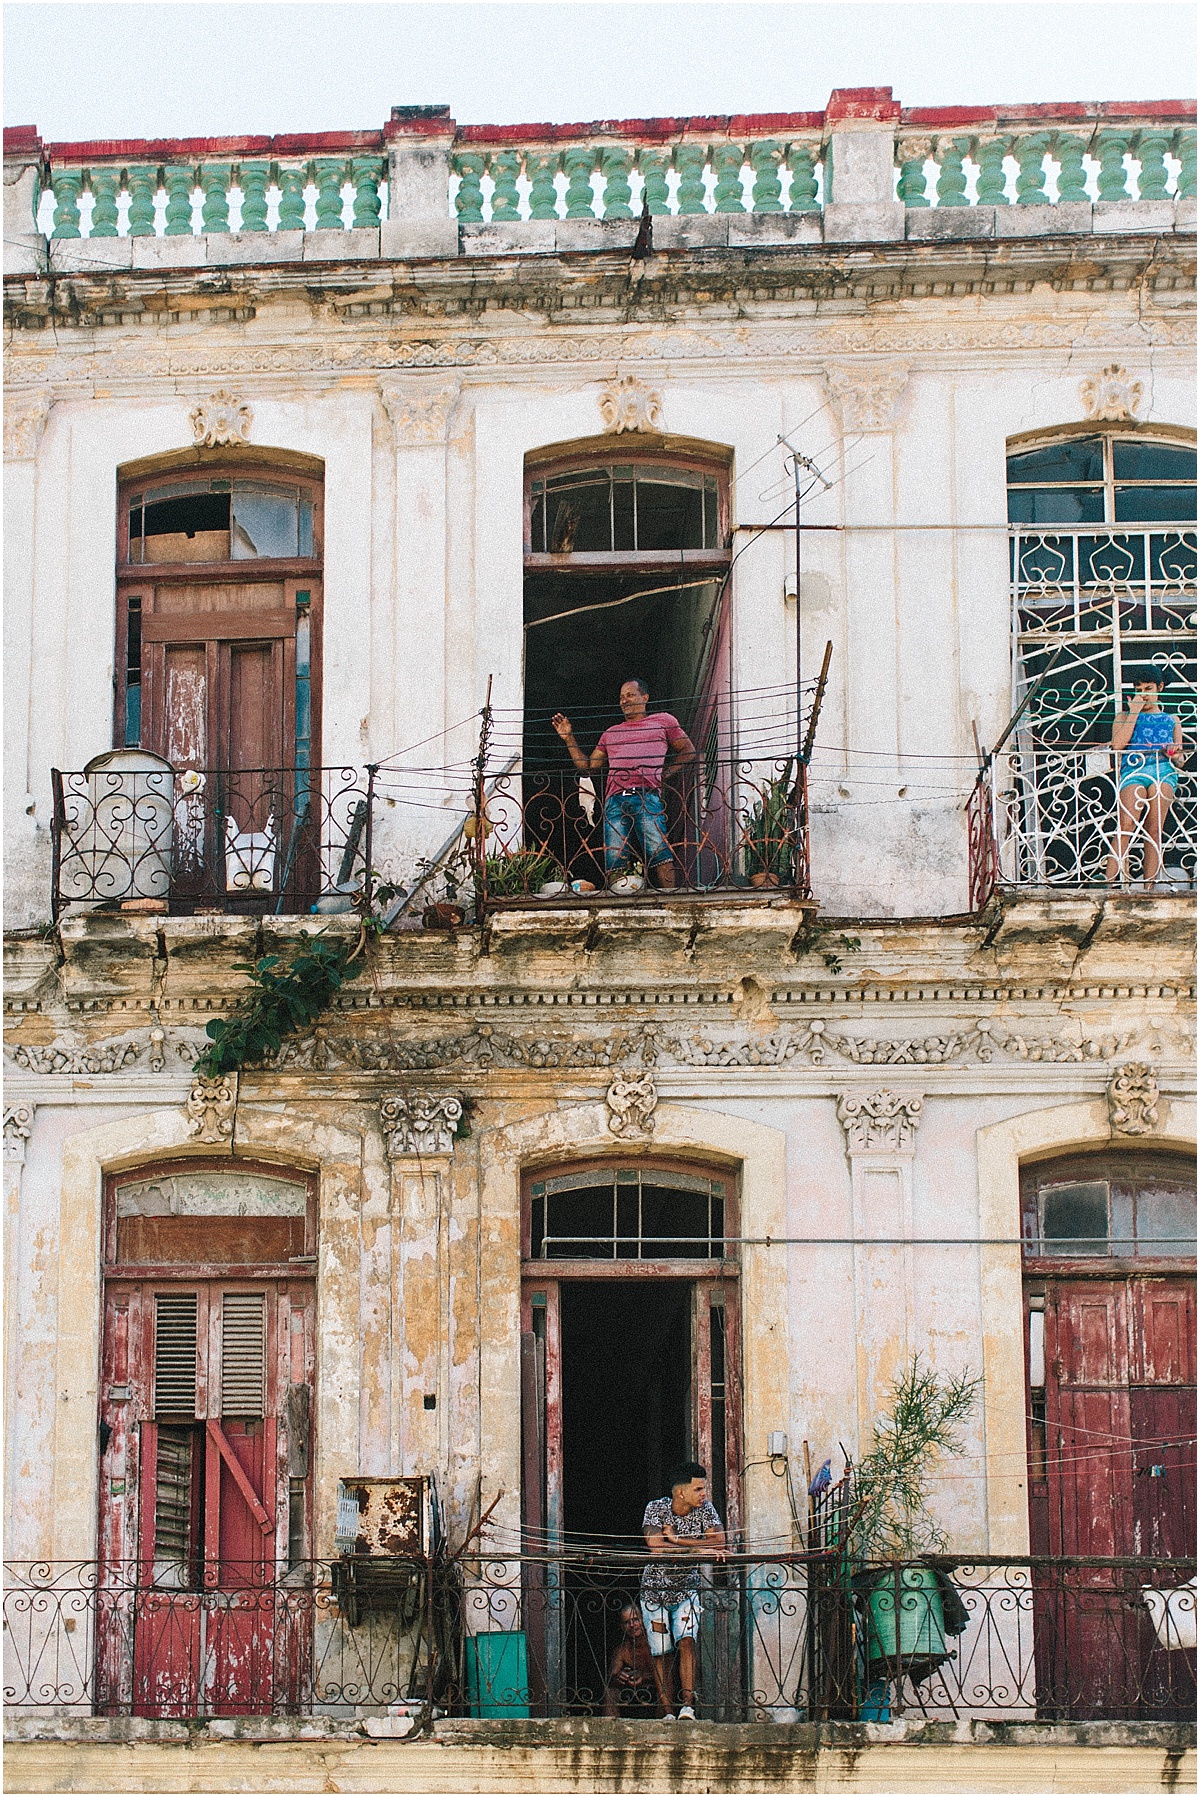 Cuba_0504.jpg